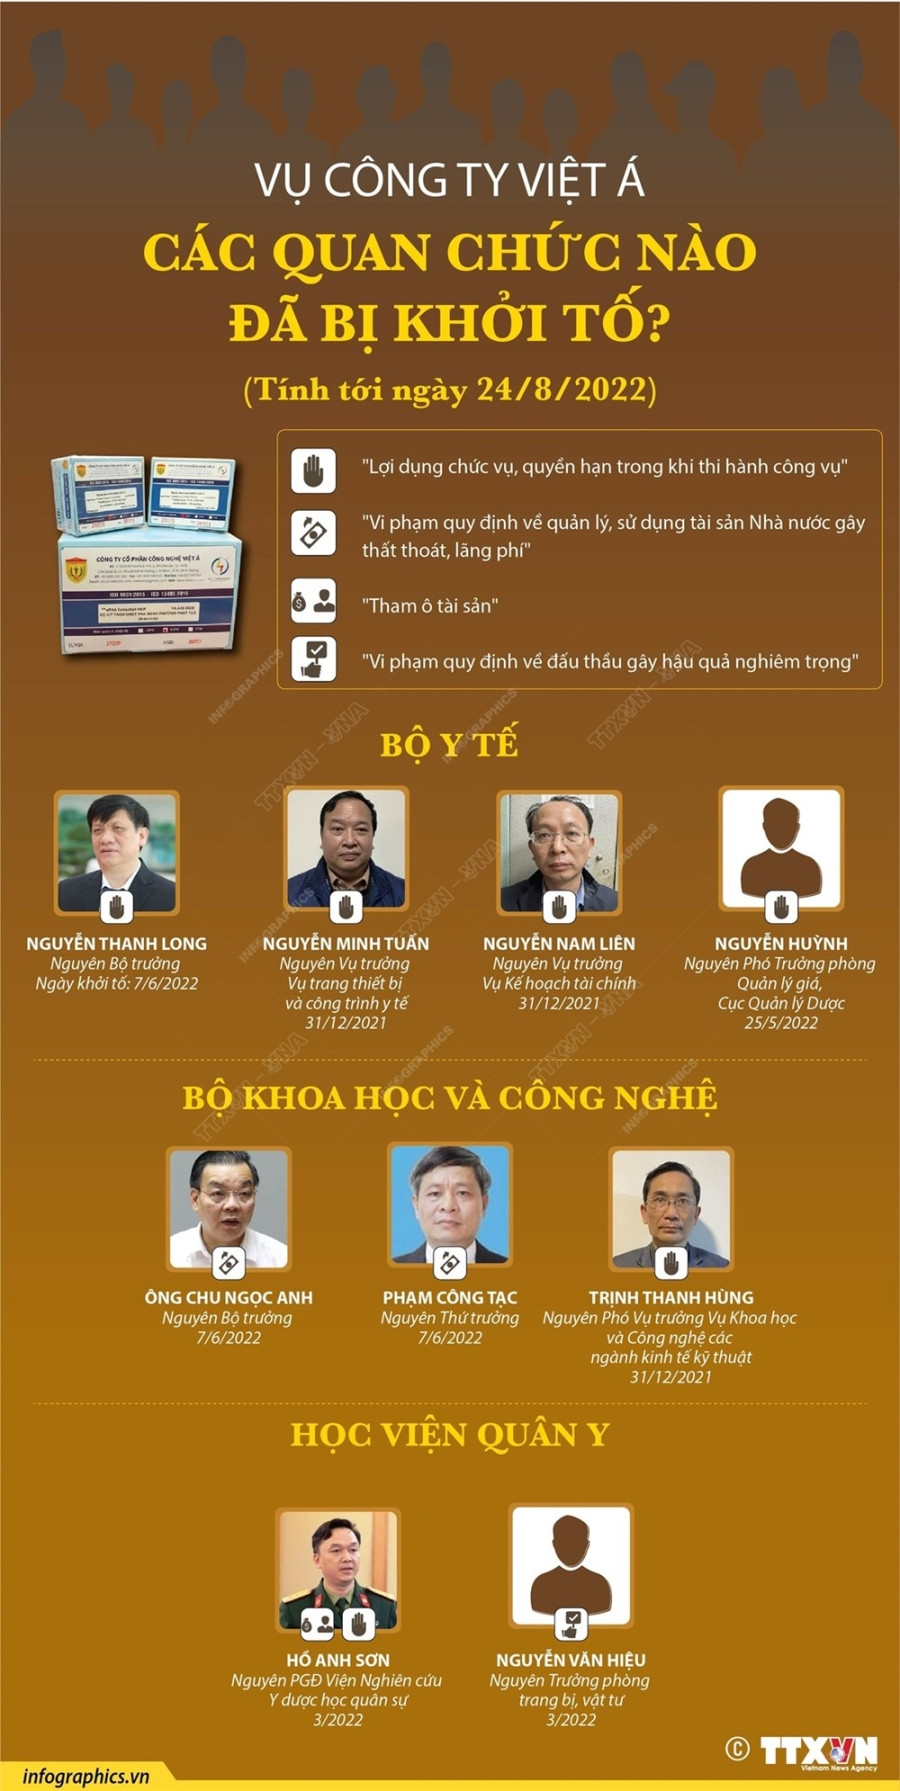 [Infographics] Toan canh vu an lien quan den cong ty Viet A hinh anh 2